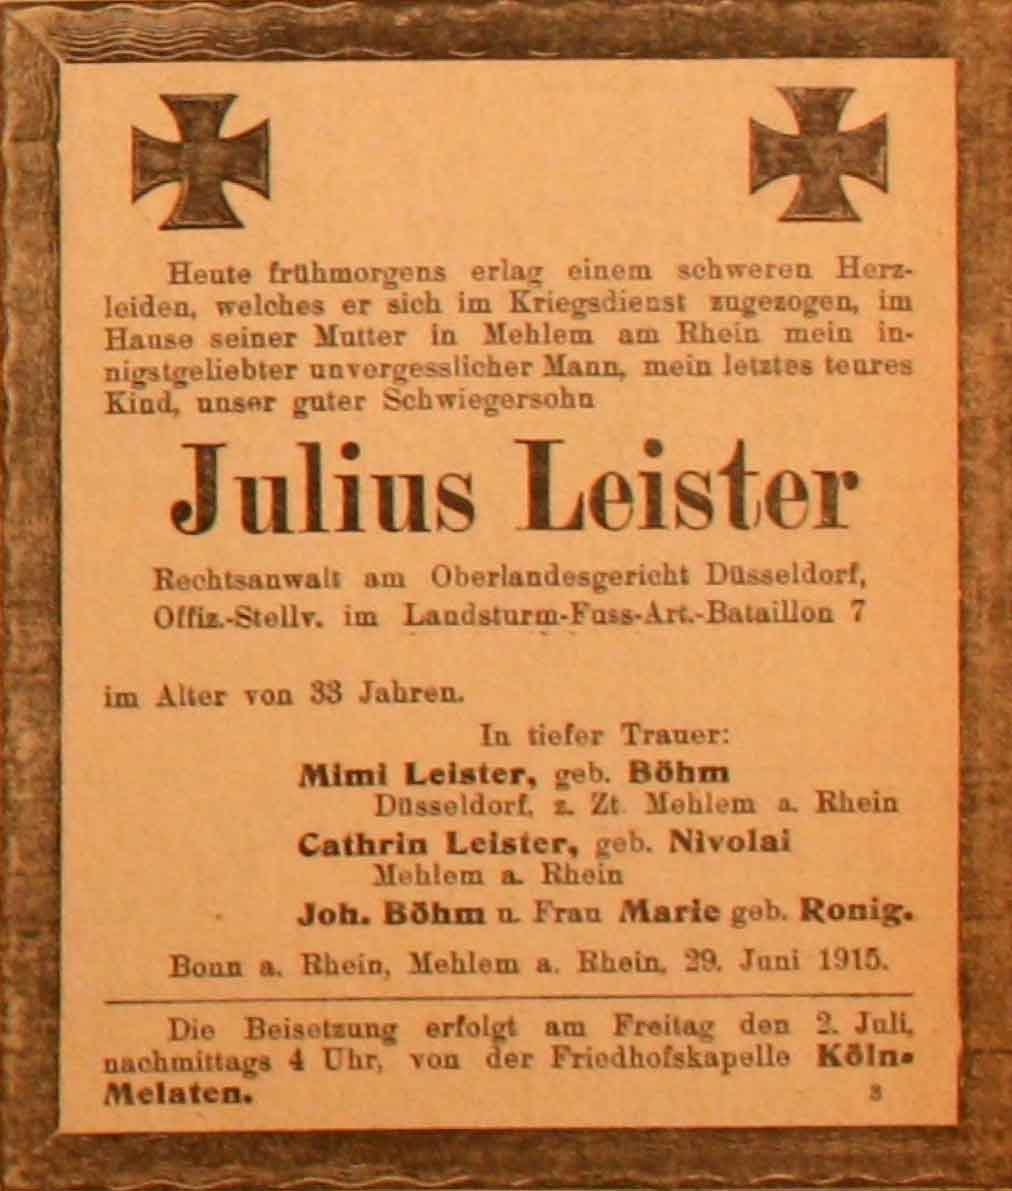 Anzeige im General-Anzeiger vom 30. Juni 1915